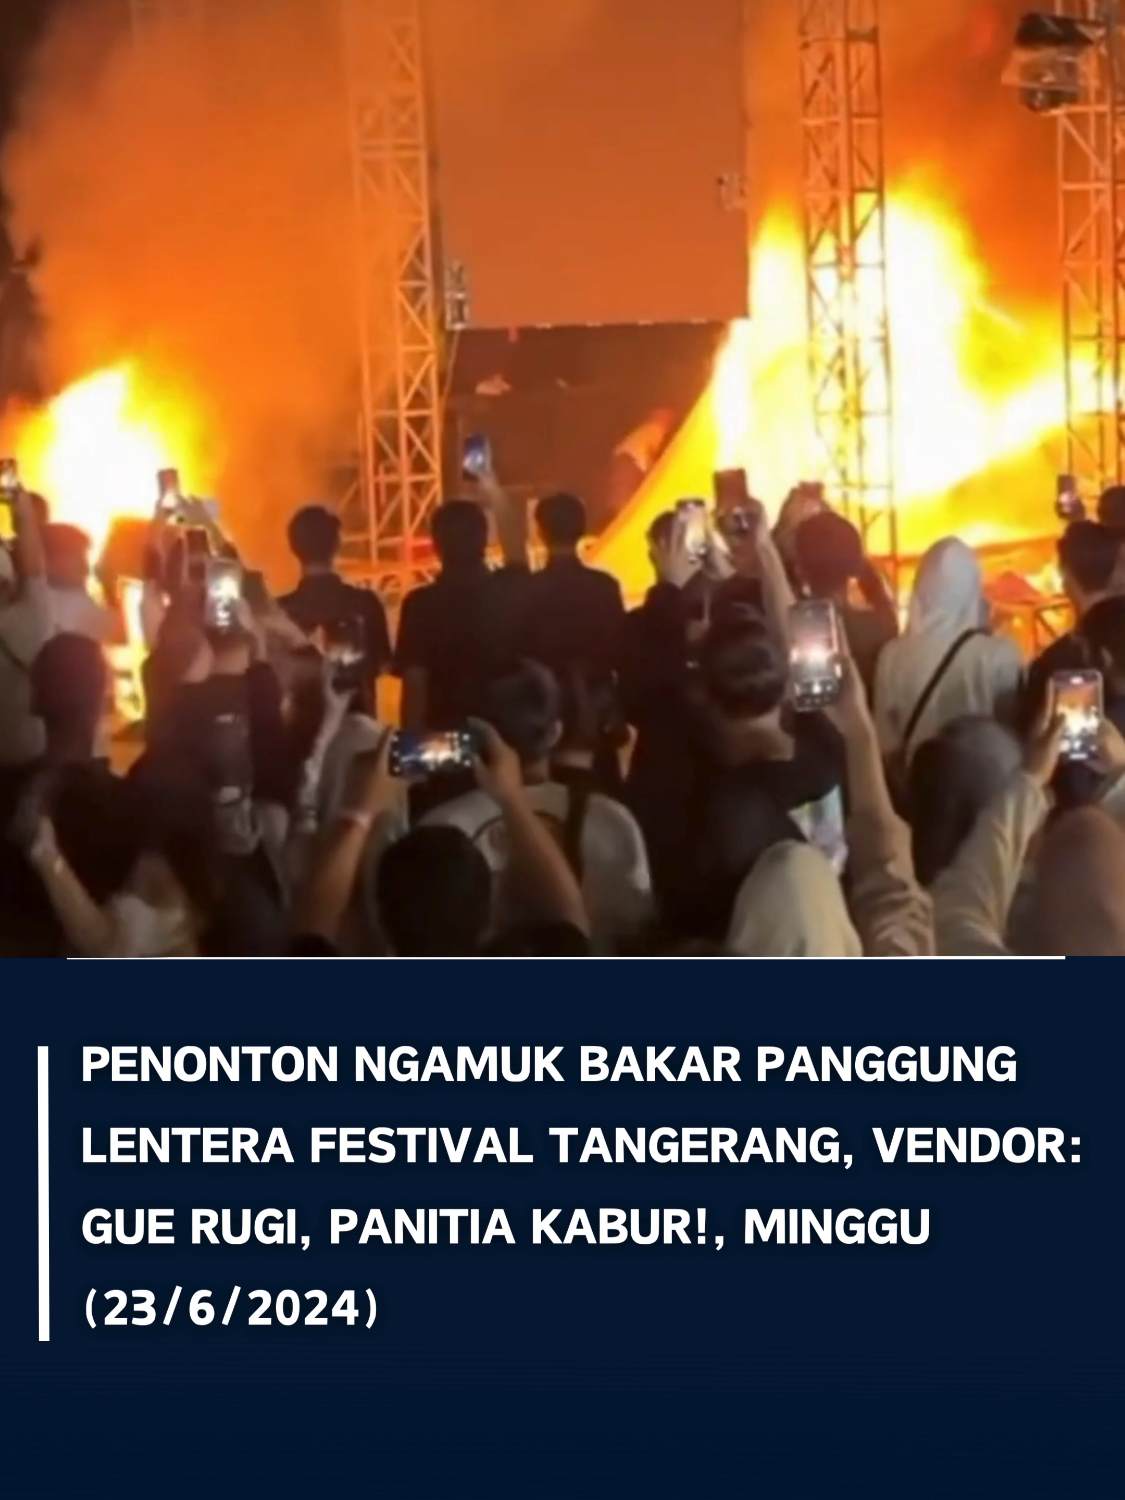 VISI.NEWS | TANGERANG – Pada Minggu, 23 Juni 2024, penonton konser musik Lentera Festival di Pasar Kemis, Kabupaten Tangerang mengamuk hingga membakar panggung. Peristiwa ini terjadi karena bintang tamu yang mereka tunggu tidak kunjung muncul di panggung. Para penonton dengan antusias menanti tampilan bintang tamu, namun setelah beberapa menit menunggu, konser tak kunjung digelar. Bintang tamu yang dijadwalkan tampil, yaitu Feel Koplo, Guyon Waton, dan Ndx Axa, gagal mengisi acara konser karena panitia yang tak membayar mereka. Akibatnya, secara berbondong-bondong, penonton membakar panggung karena merasa dirugikan setelah membeli tiket sebesar Rp 115.000 per orang. Polisi berhasil membubarkan para penonton setelah satu jam dan membuat kondisi di lokasi kembali kondusif. Tidak ada laporan mengenai korban jiwa. Namun, kerugian materi akibat pembakaran panggung tentu menjadi perhatian serius. Semoga kejadian ini dapat menjadi pelajaran bagi penyelenggara acara untuk lebih memperhatikan keselamatan dan kenyamanan penonton di masa mendatang. Hingga saat ini, belum ada pernyataan resmi dari pihak penyelenggara konser Lentera Festival di Pasar Kemis, Tangerang. Namun, situasi ini tentu menjadi perhatian serius bagi mereka. Diharapkan agar panitia dapat memberikan klarifikasi dan tanggapan yang memadai terkait insiden ini, serta mengambil langkah-langkah untuk mencegah kejadian serupa di masa mendatang. Video : memomedsos #tiktokberita #visinews